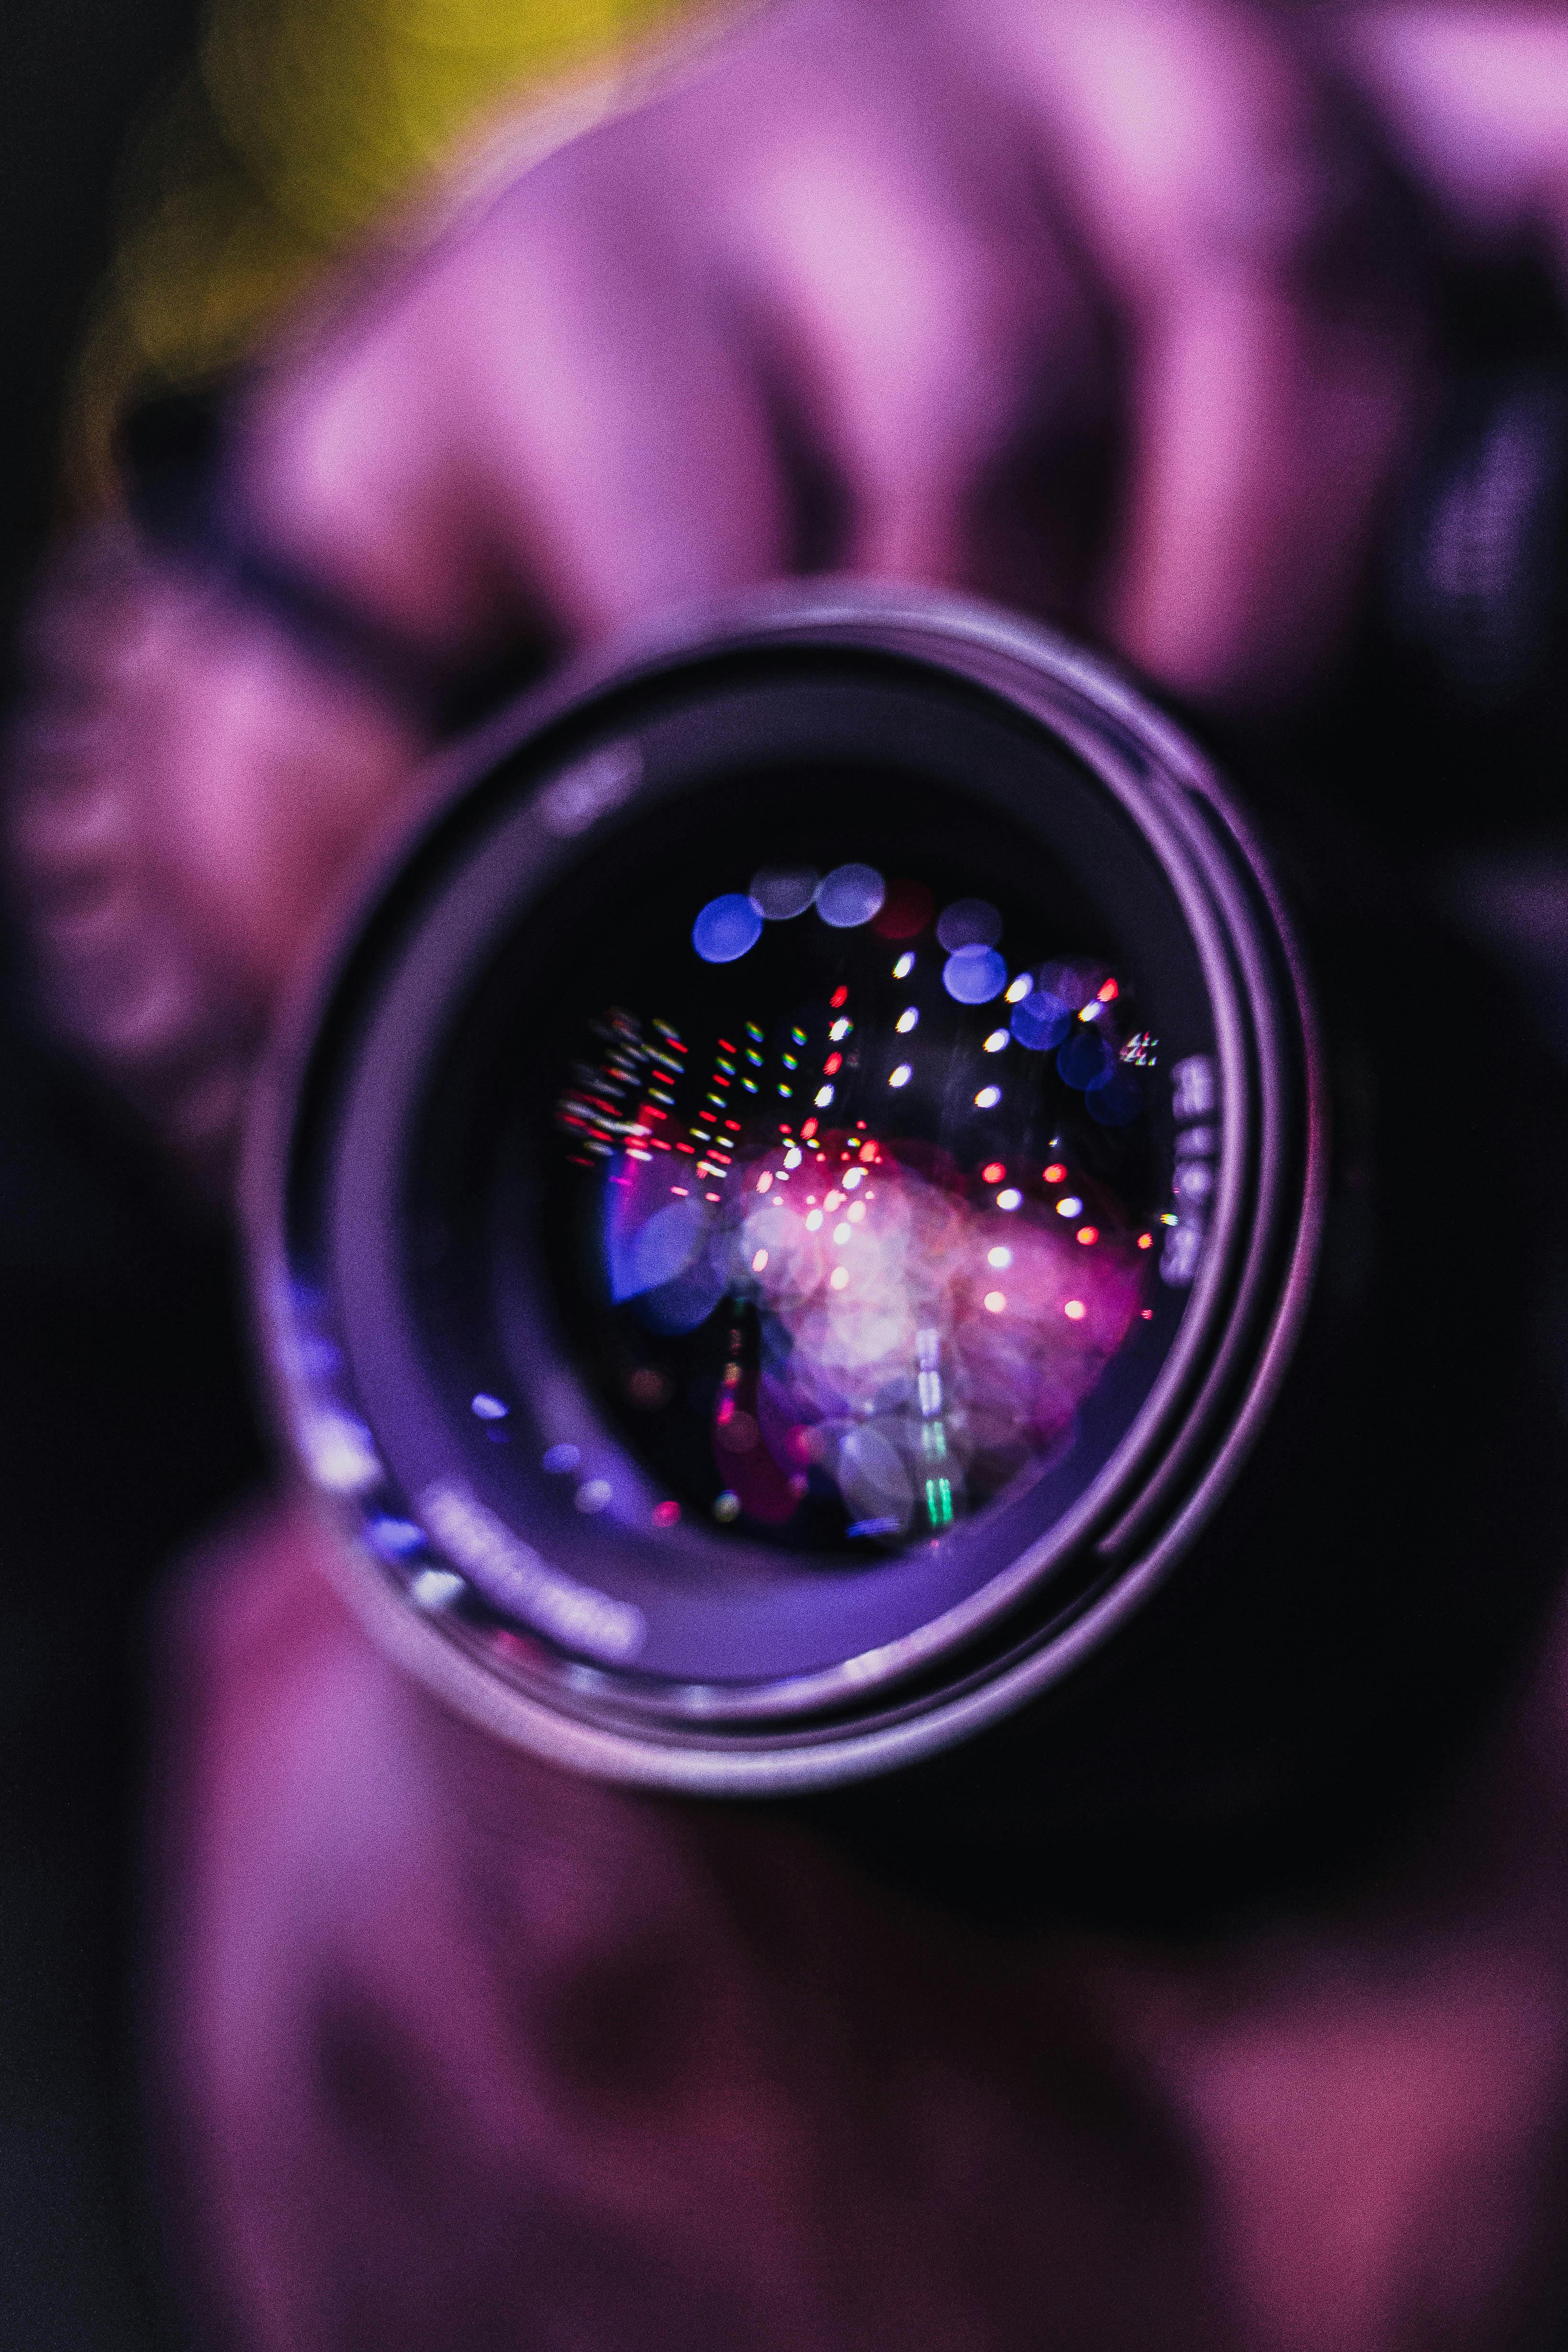 Camera Lens Photo - Free photo on Pixabay - Pixabay